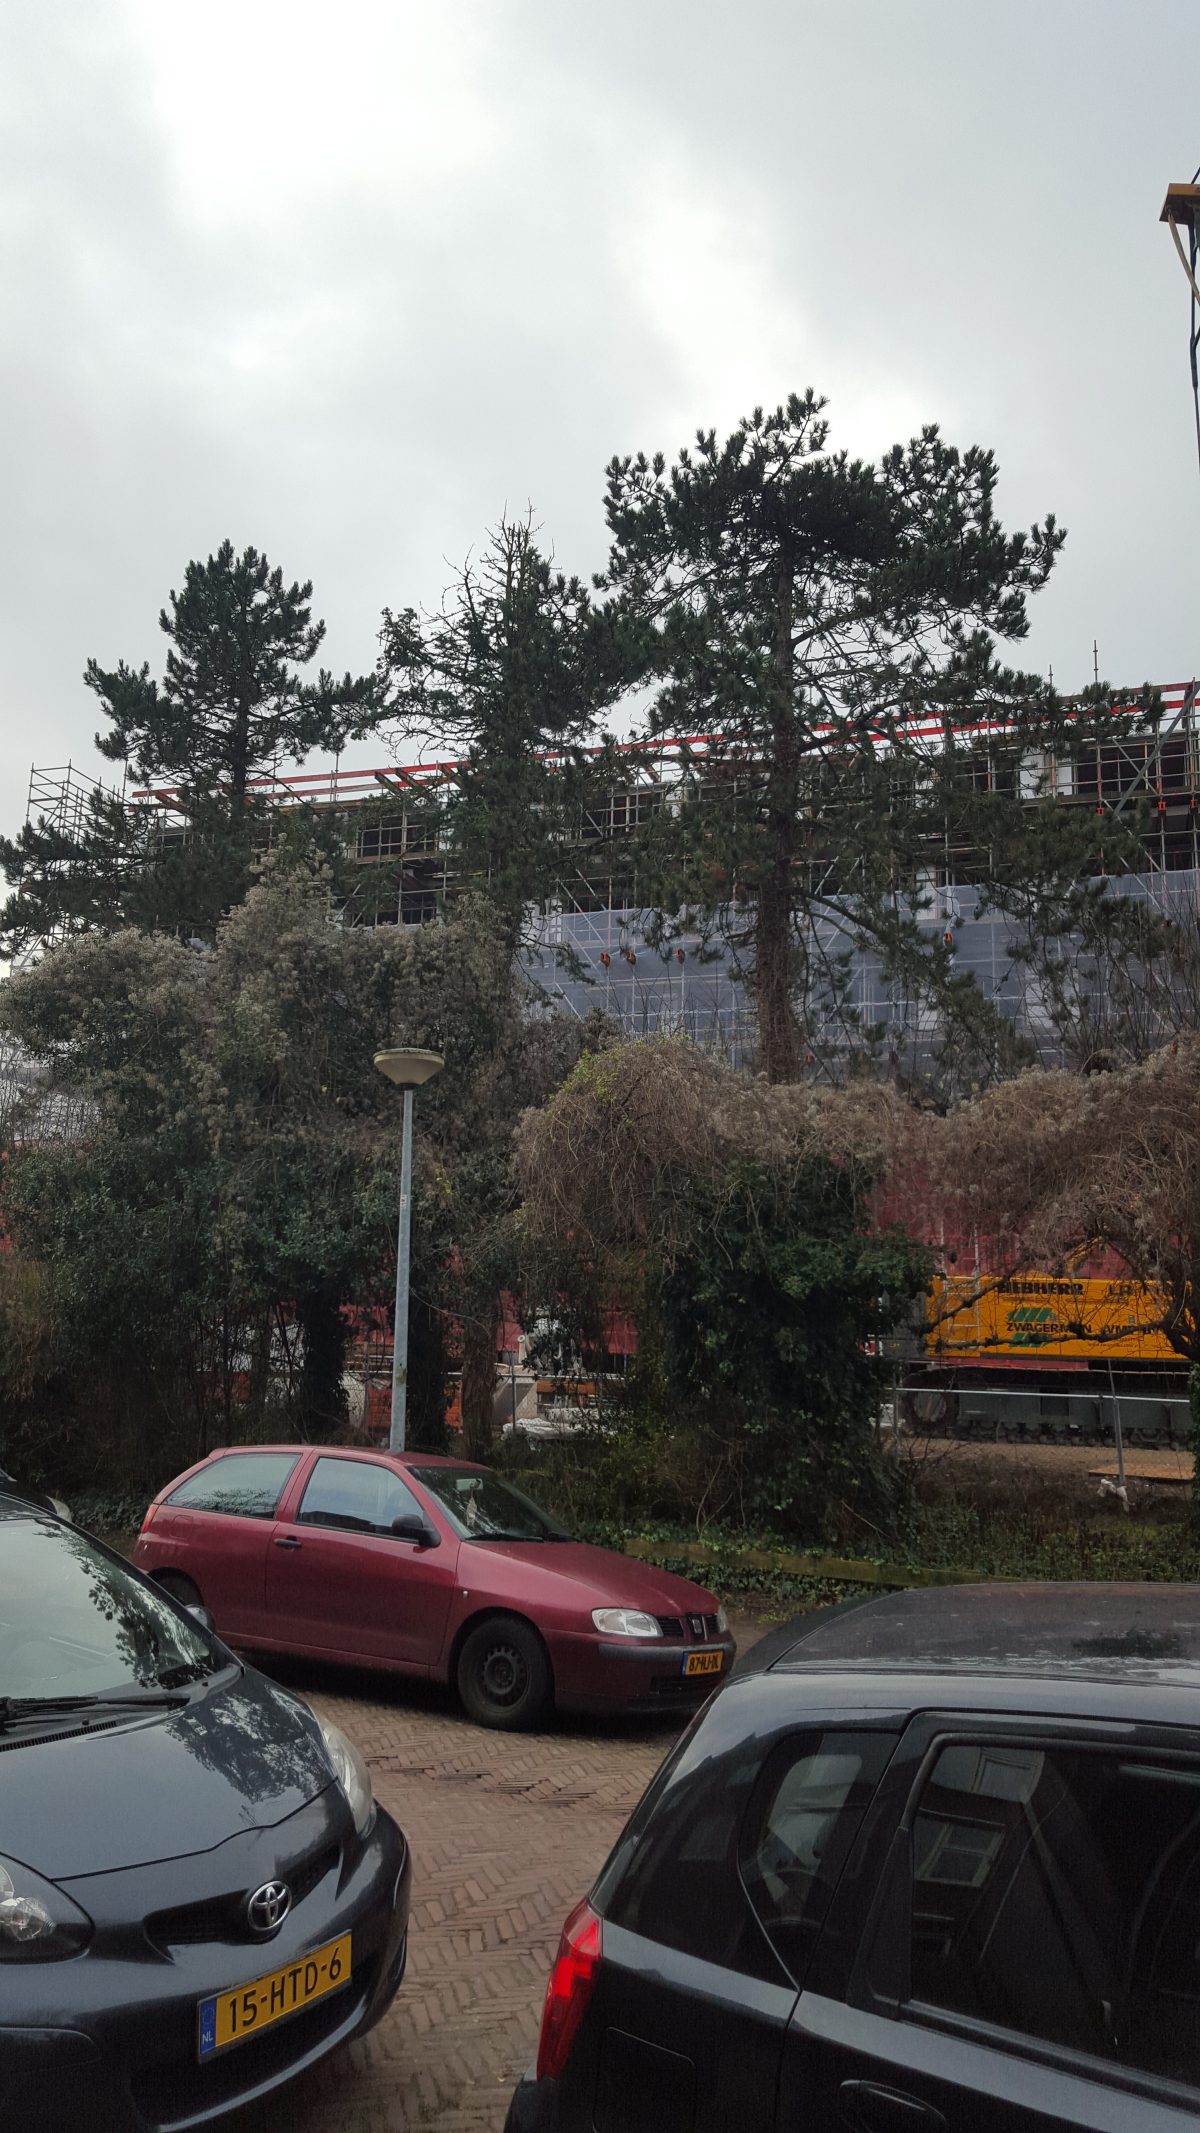 3 Black Pines at the Van Houtenlaan in Helpman slated for felling in 2021